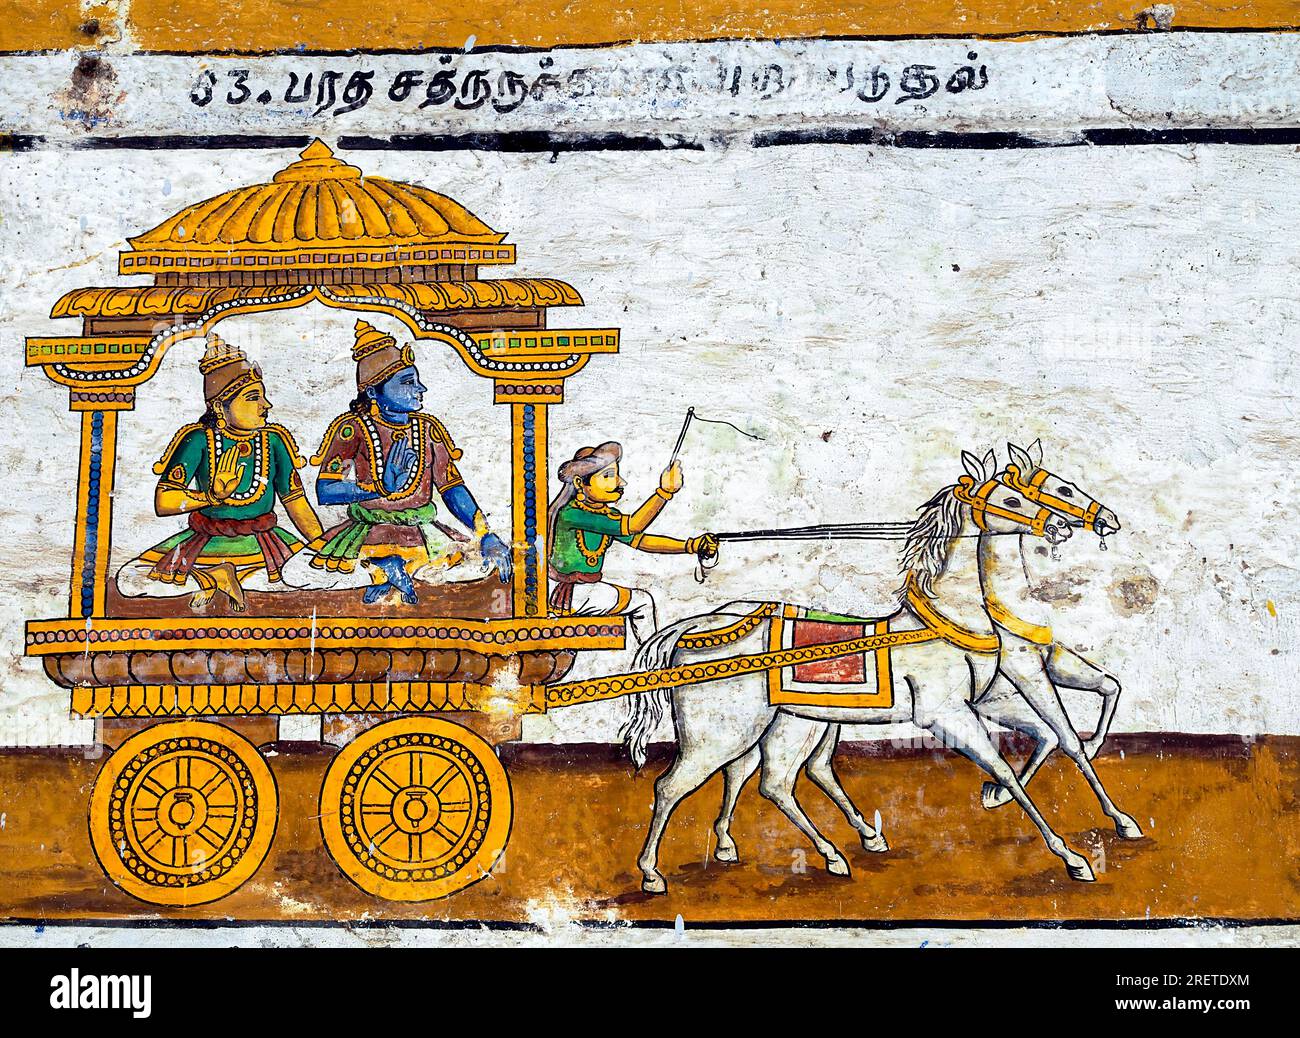 Peintures murales épiques de Ramayana dans le temple de Ramasamy Vishnu à Kumbakonam, Tamil Nadu, Inde, Asie. Cheval, chariot Banque D'Images